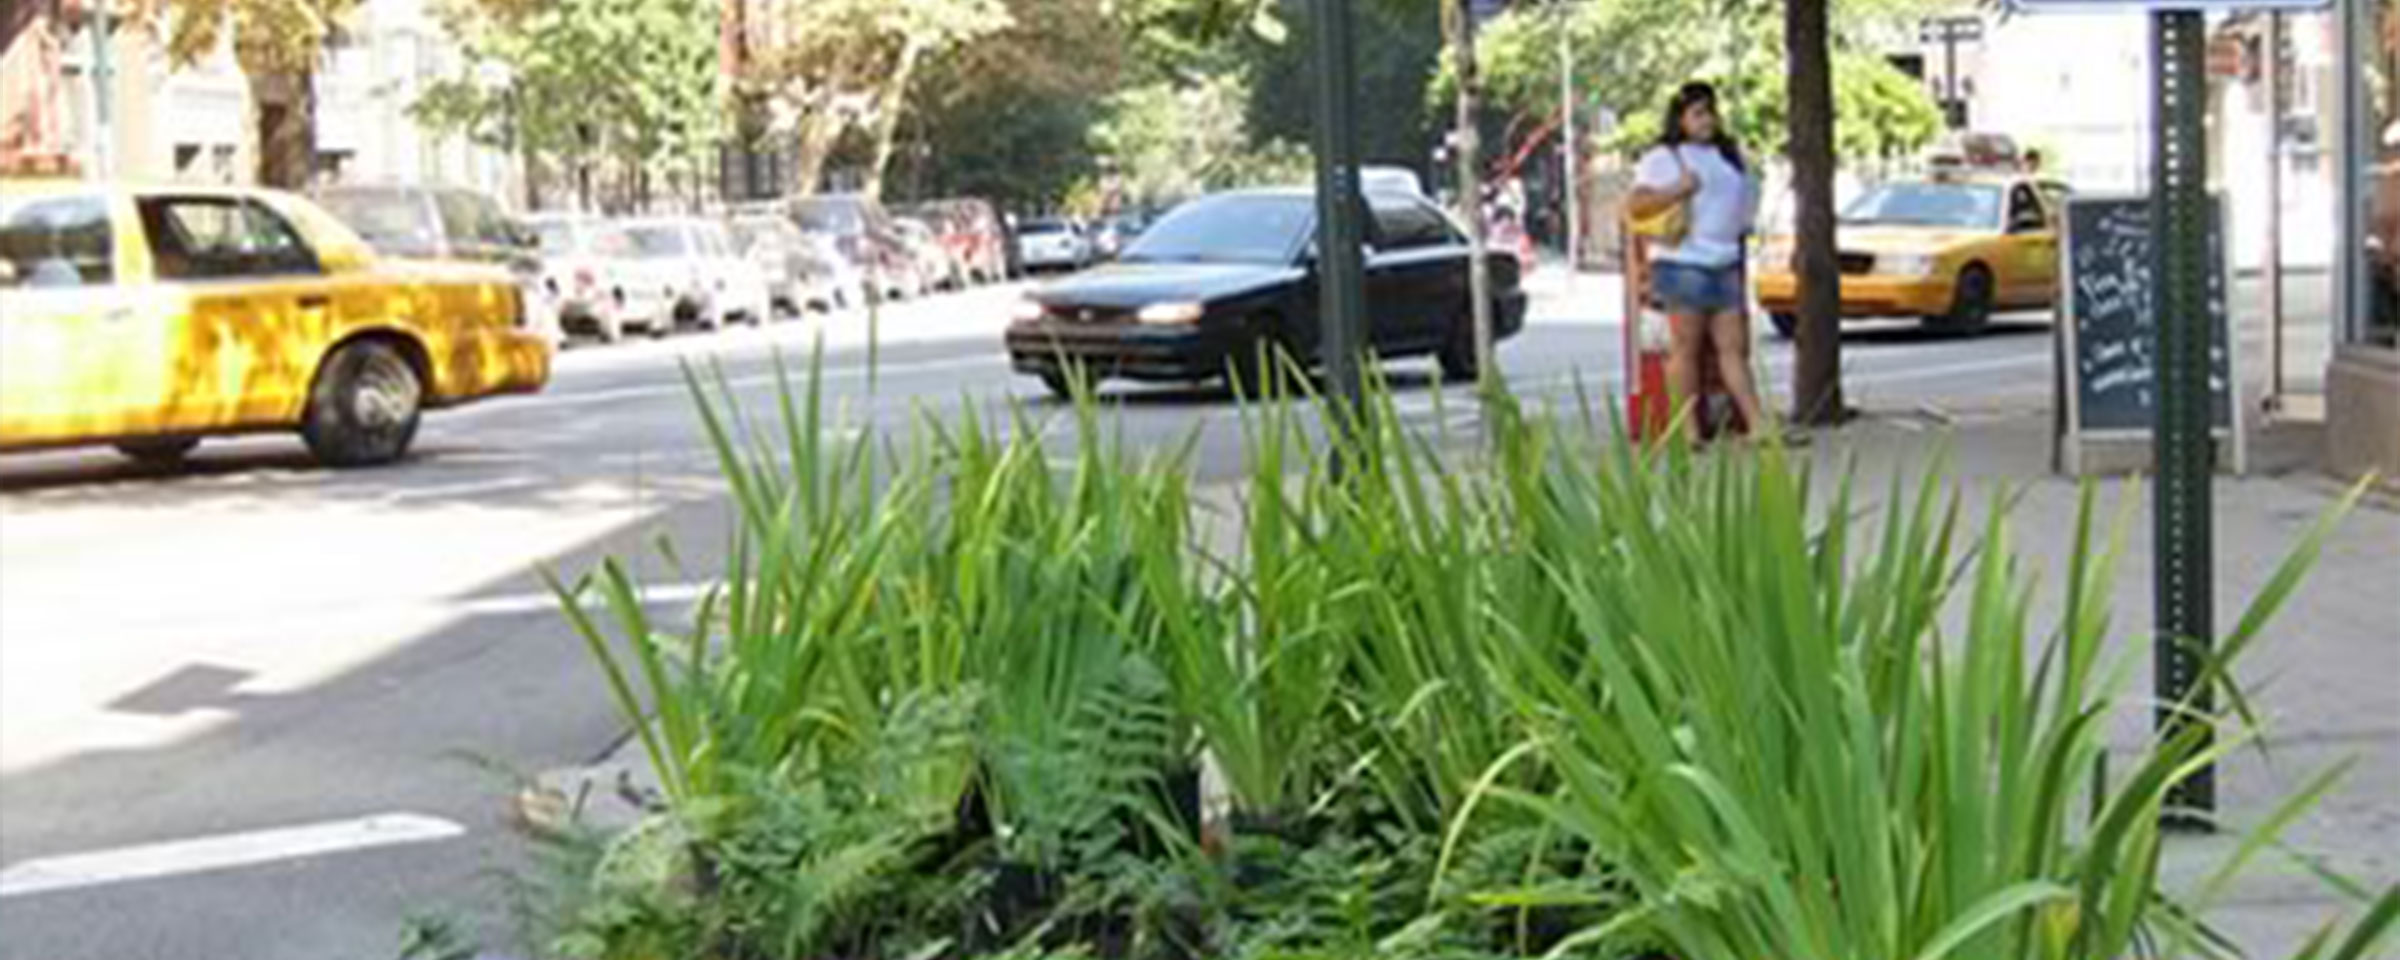 Straße mit Autos und grüner Pflanze im Vordergrund